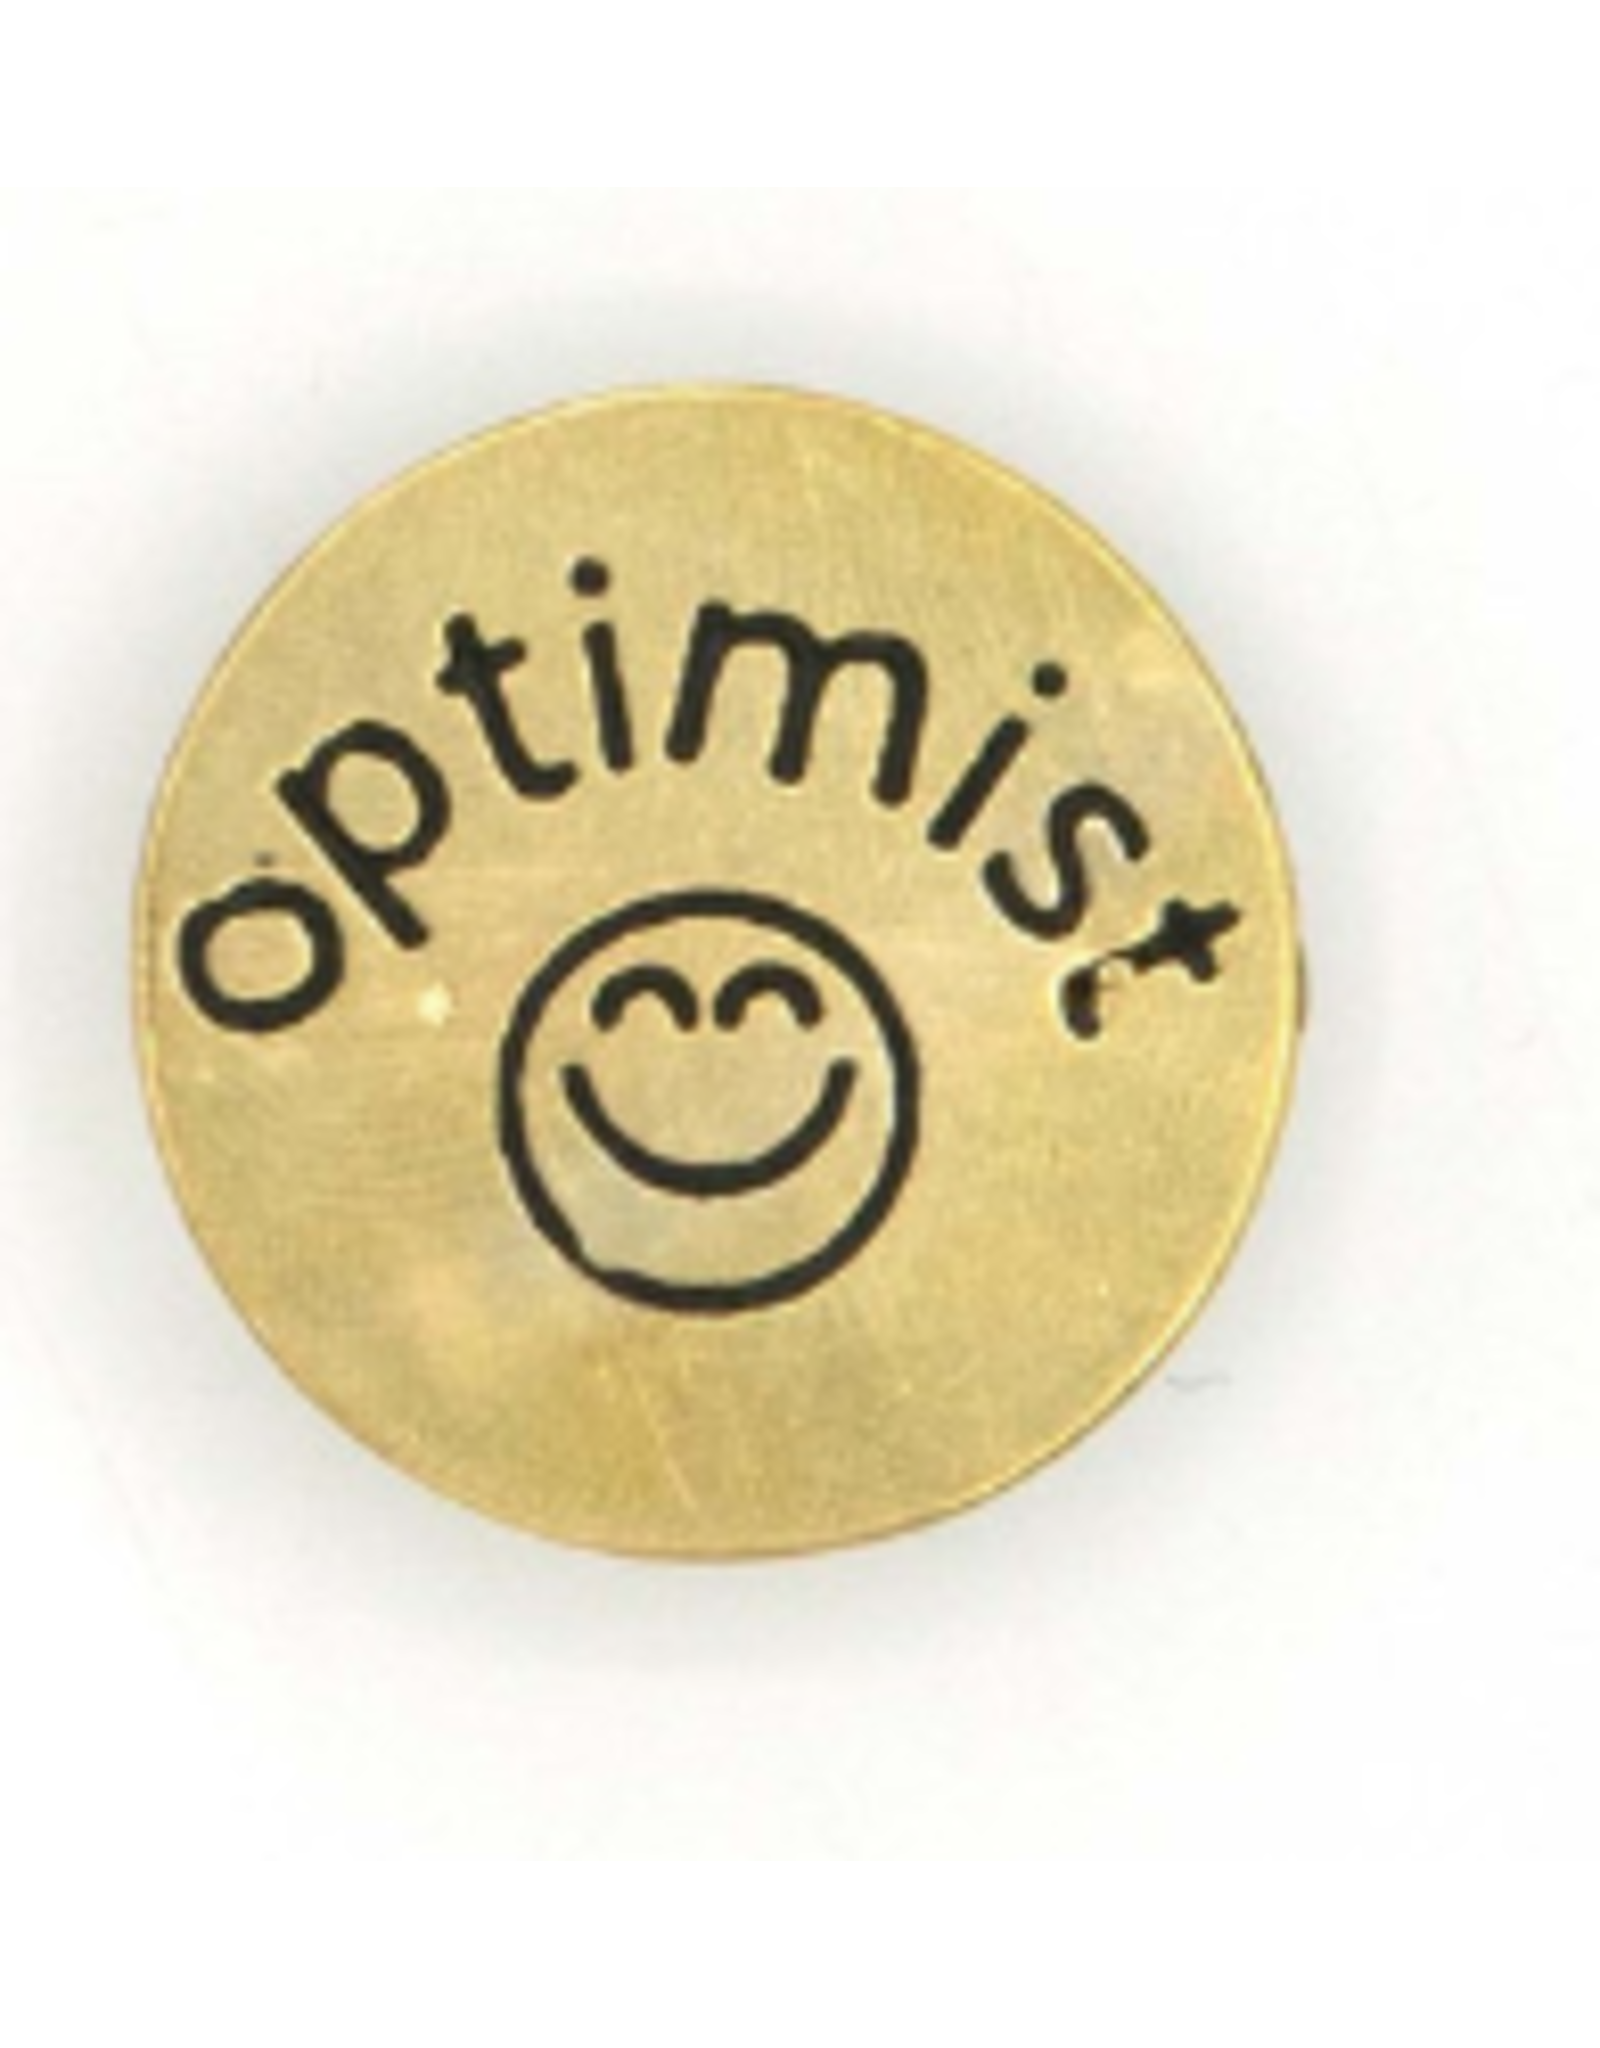 India Optimist Pin, India